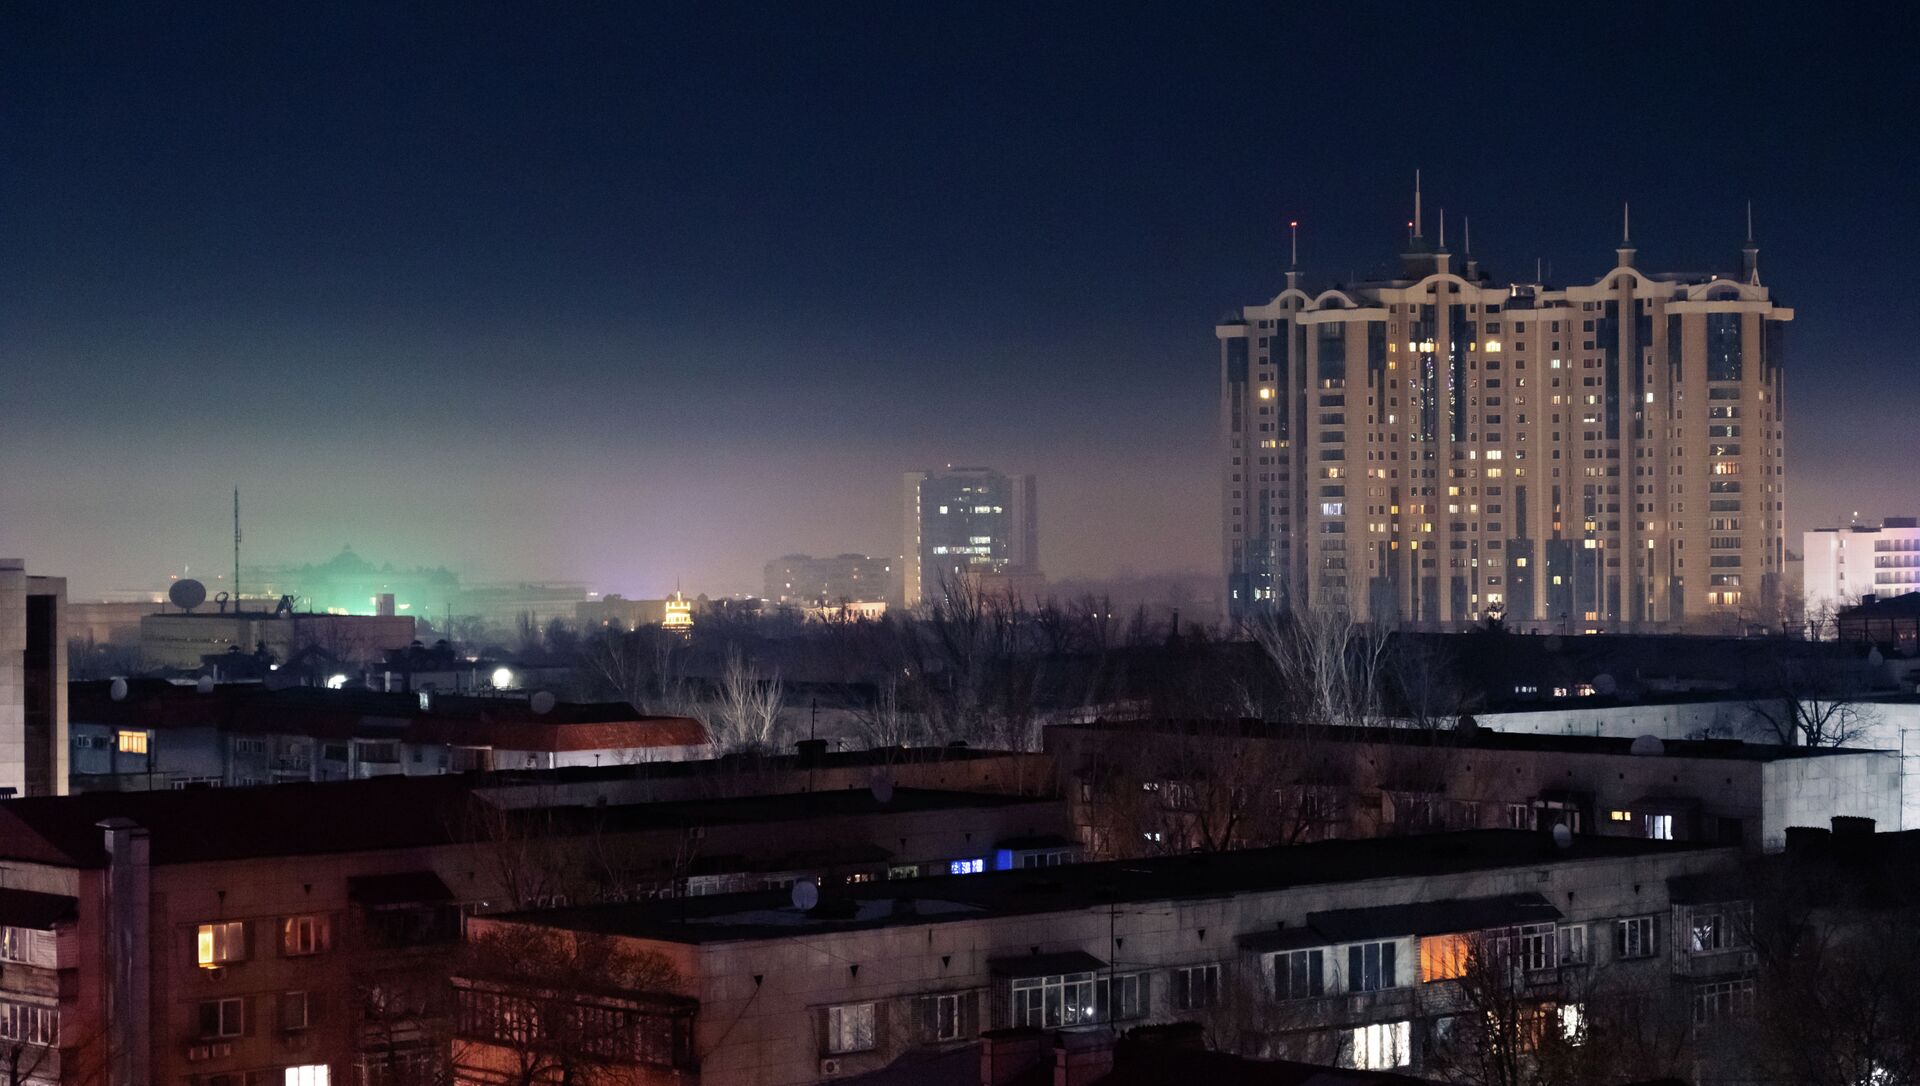 Смог в Алматы видно даже ночью  - Sputnik Қазақстан, 1920, 13.08.2021